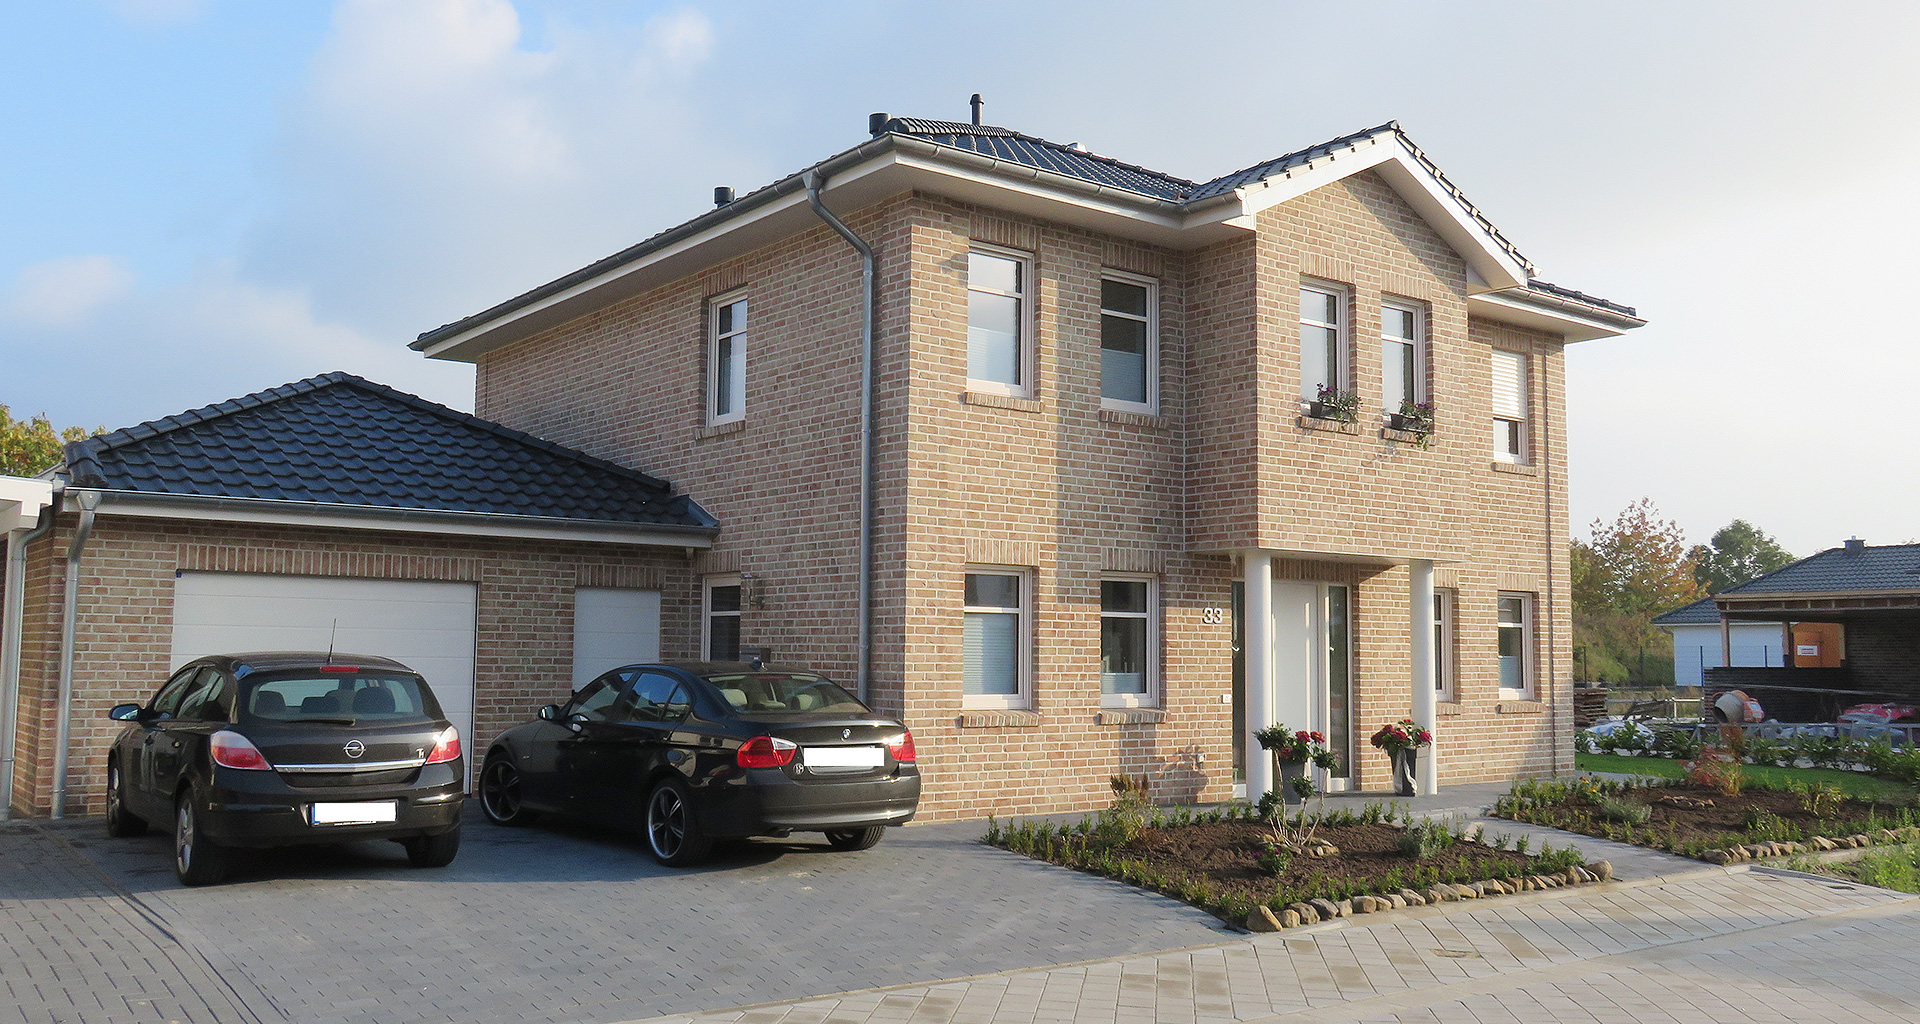 Einfamilienhaus Front mit Eingang und Carport linke Seite in Wietmarschen-Lohne Emsland 2015